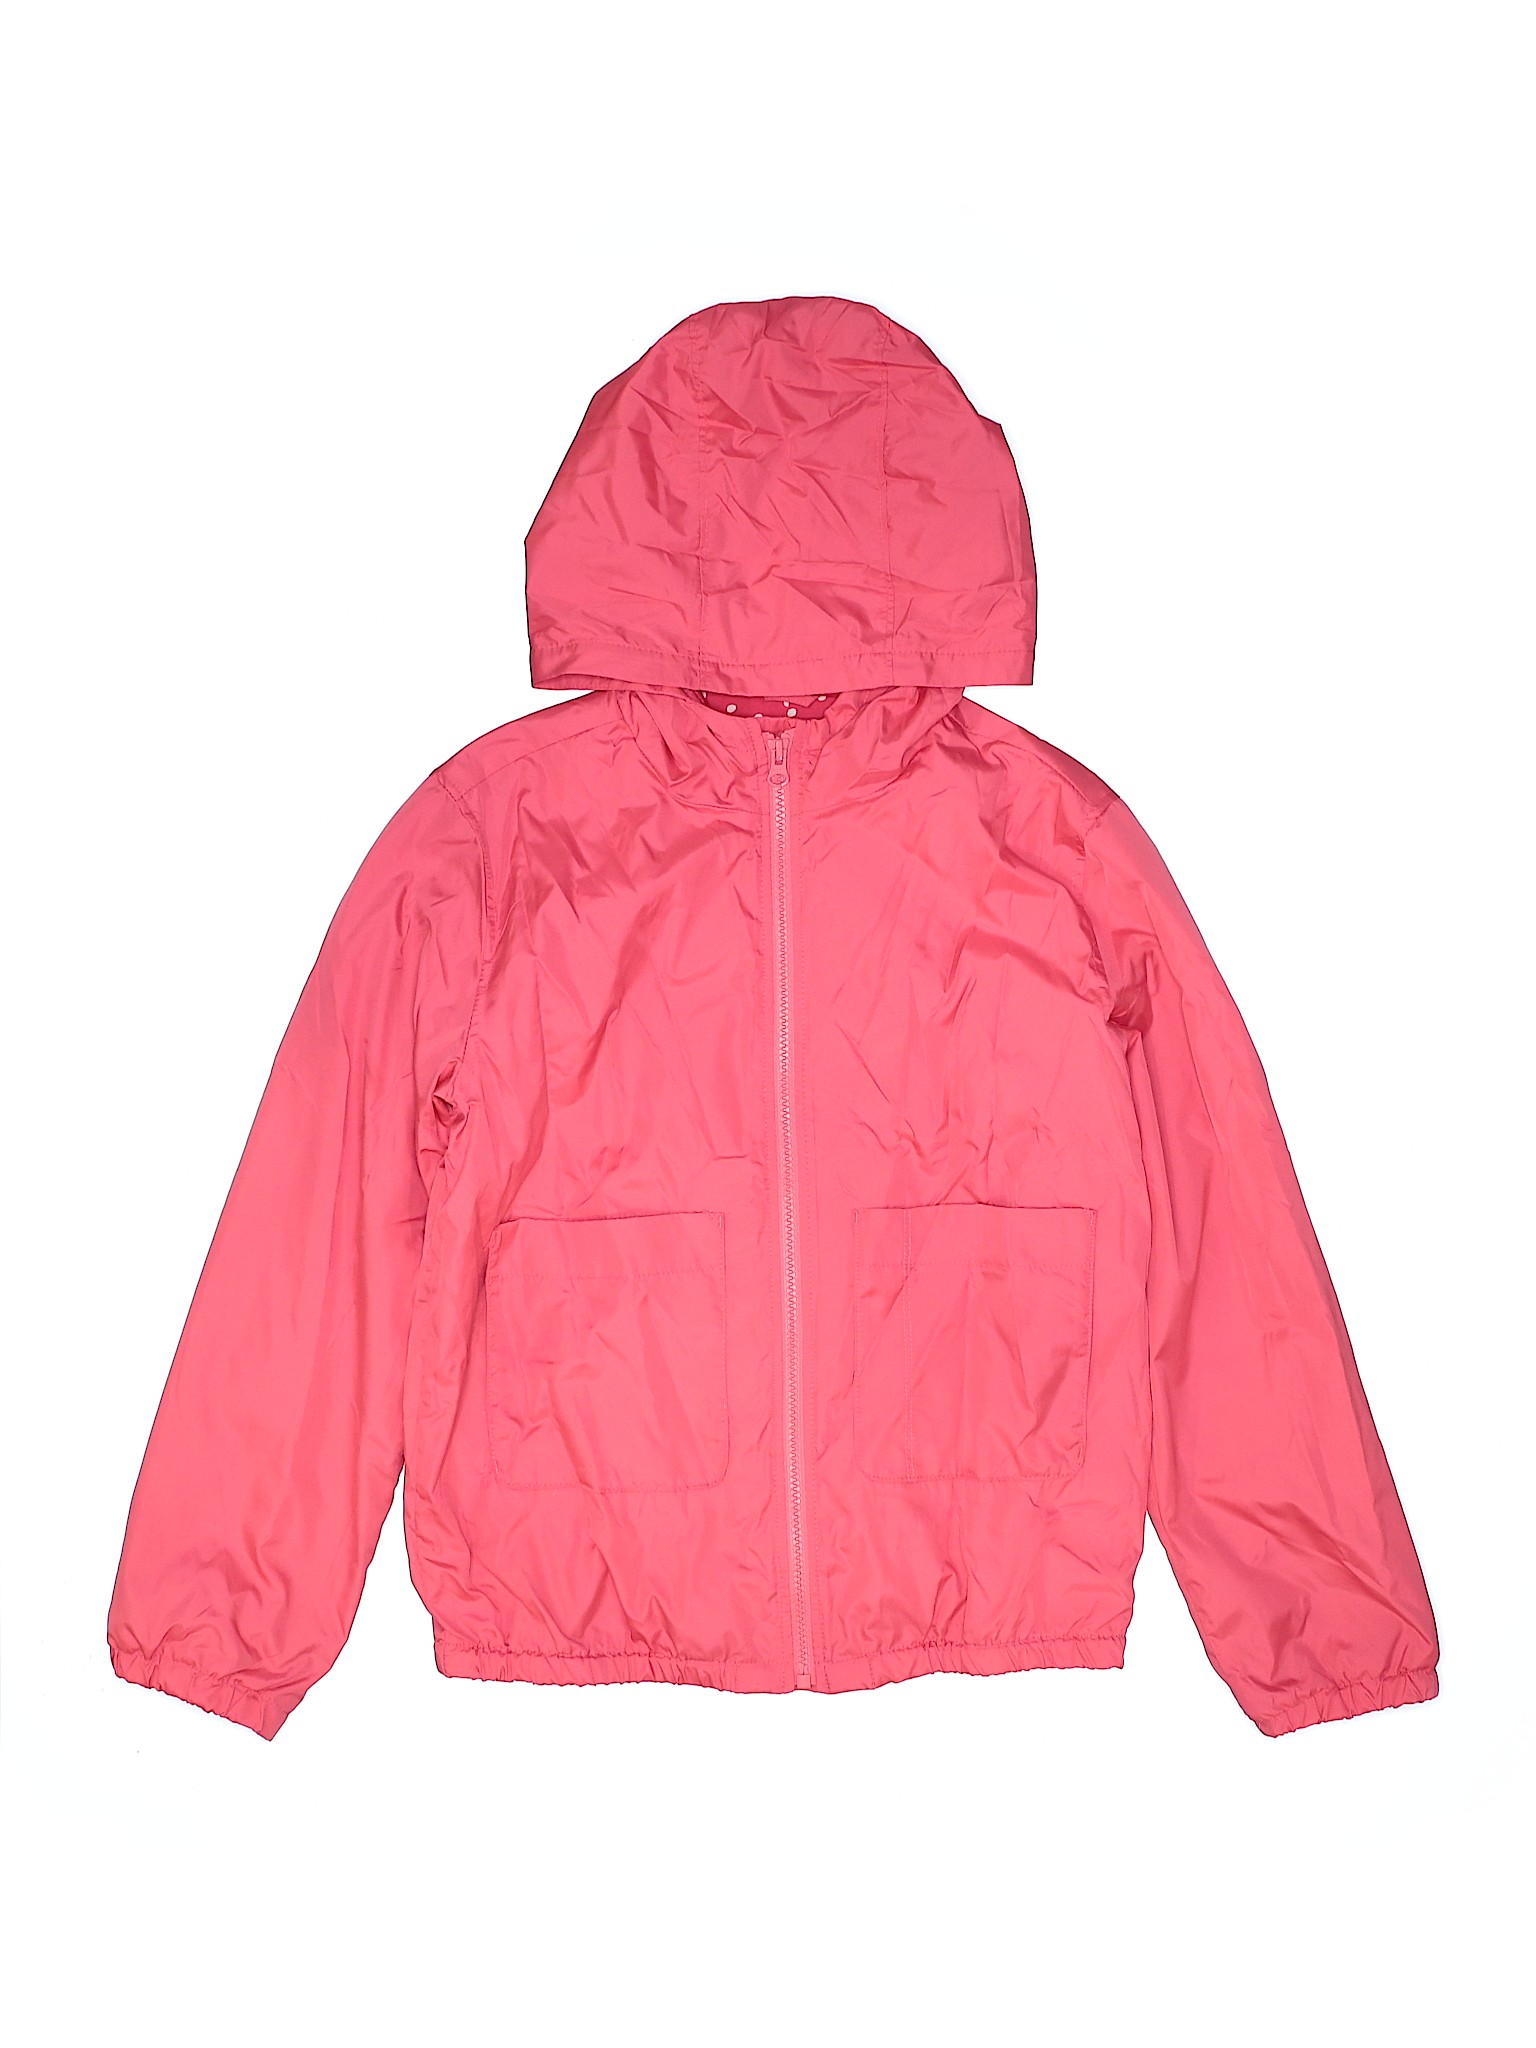 Gap Kids Girls Pink Jacket X-Large kids | eBay